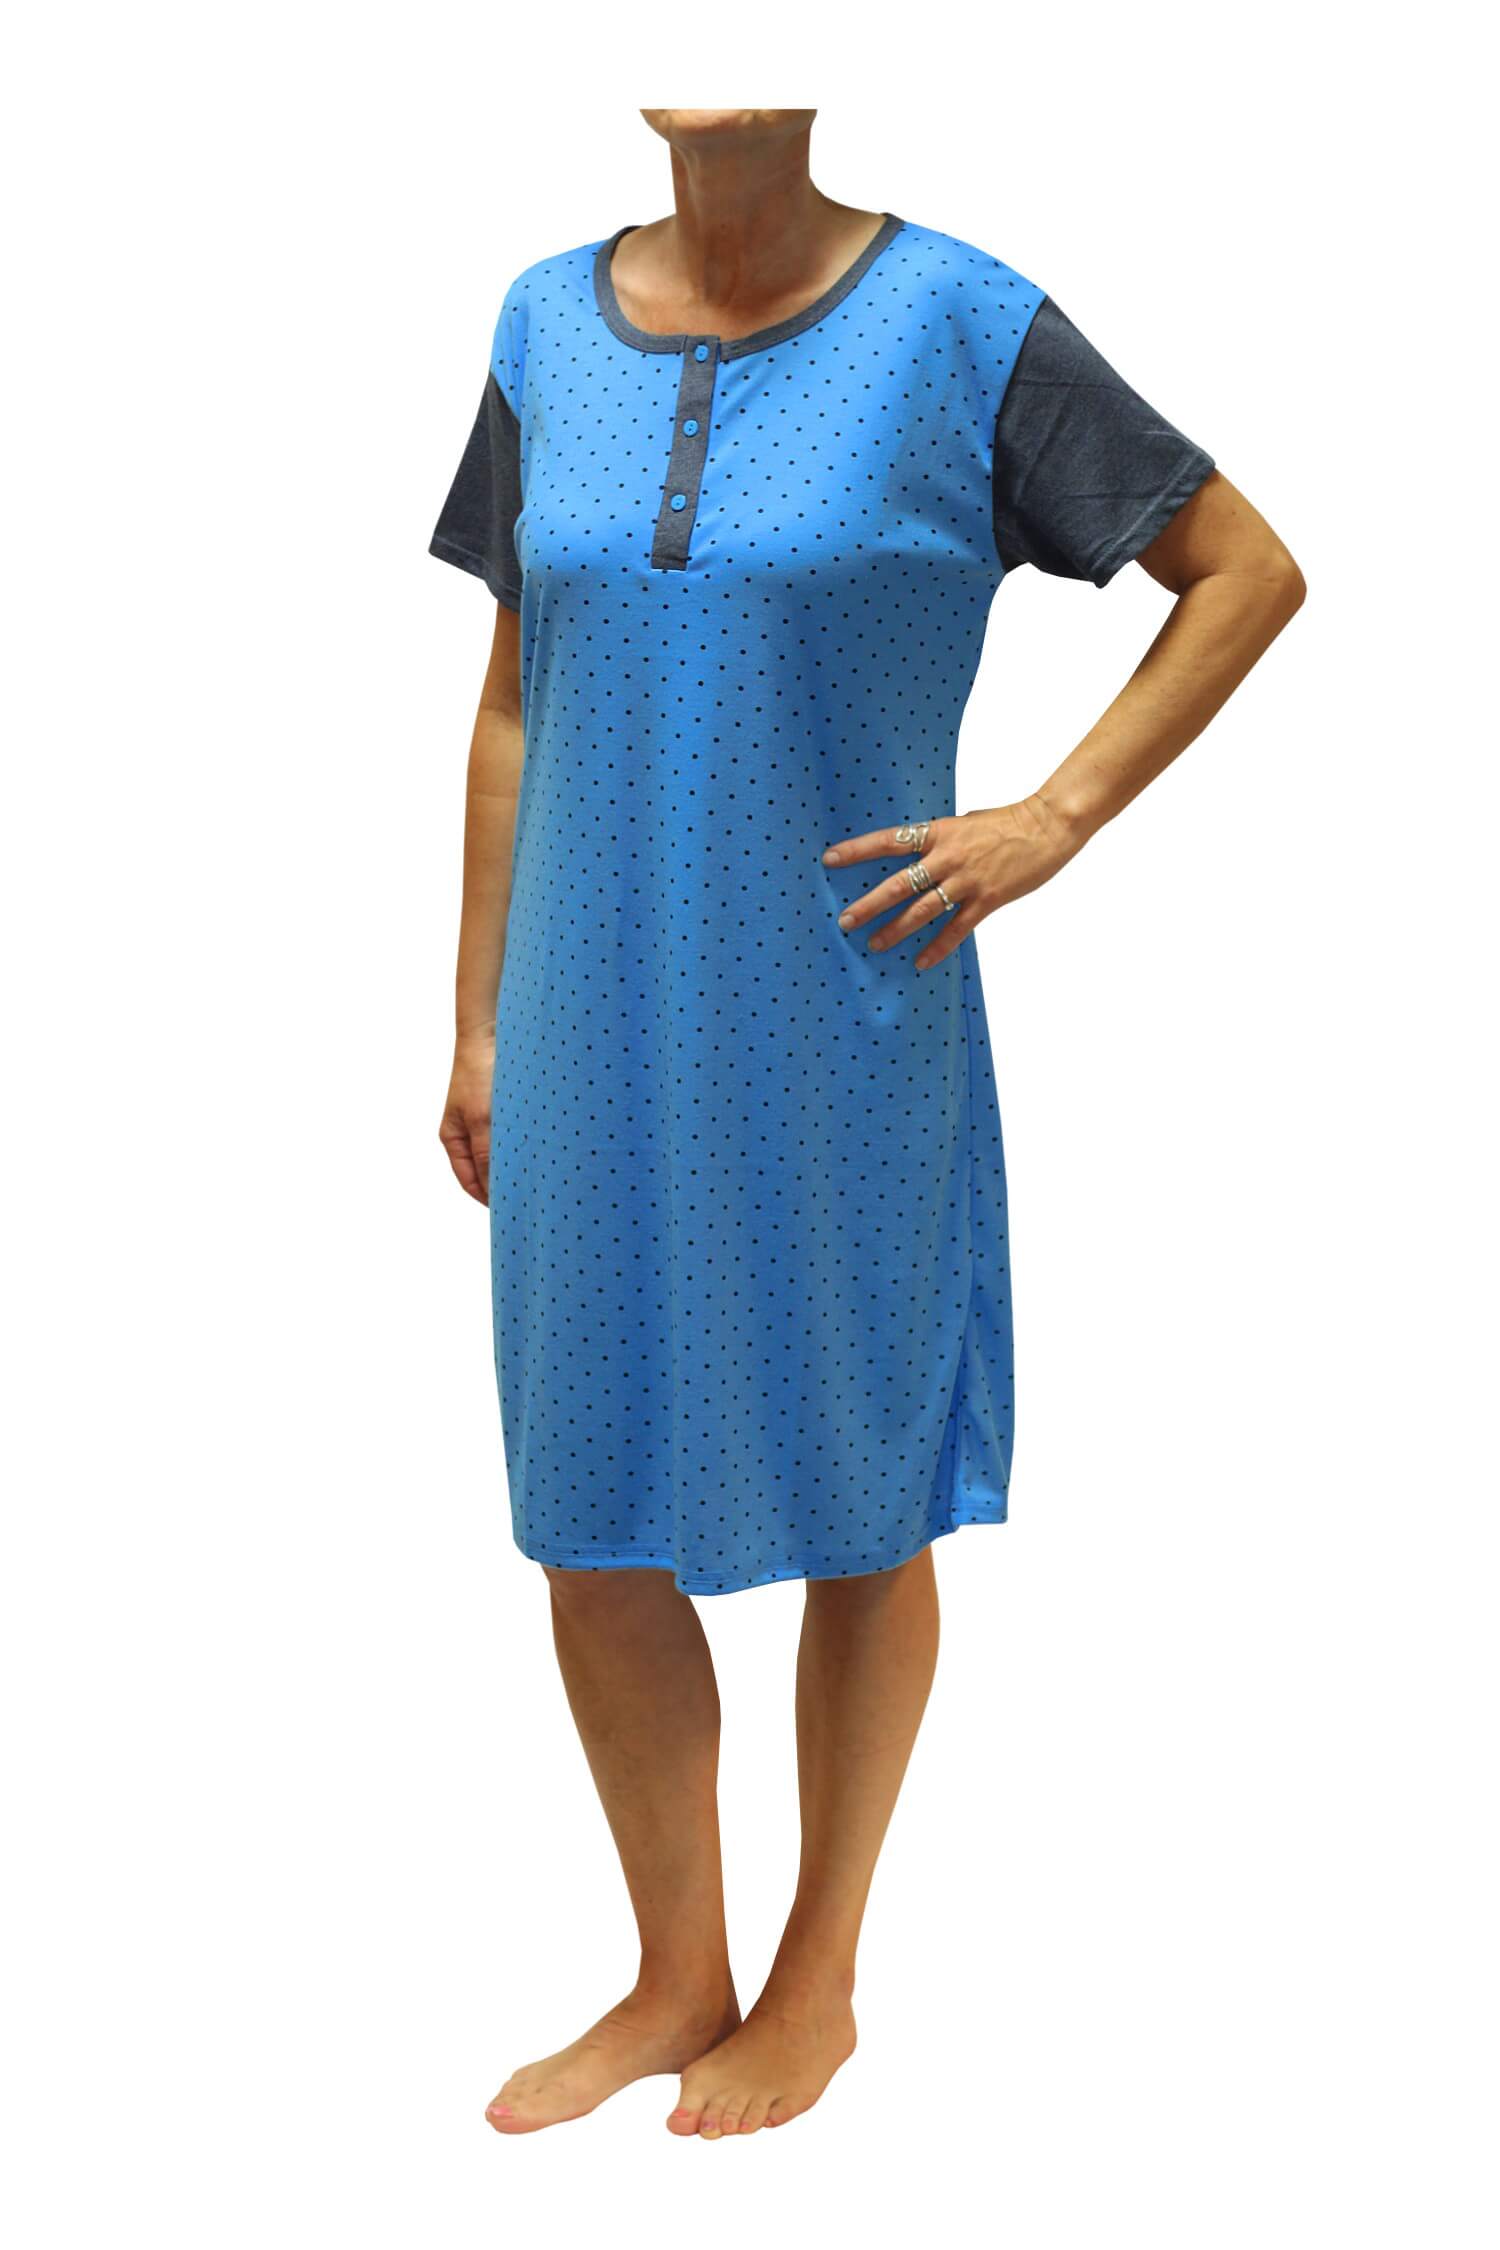 Adéla dámská noční košile s puntíky DNU329-NT M modrá